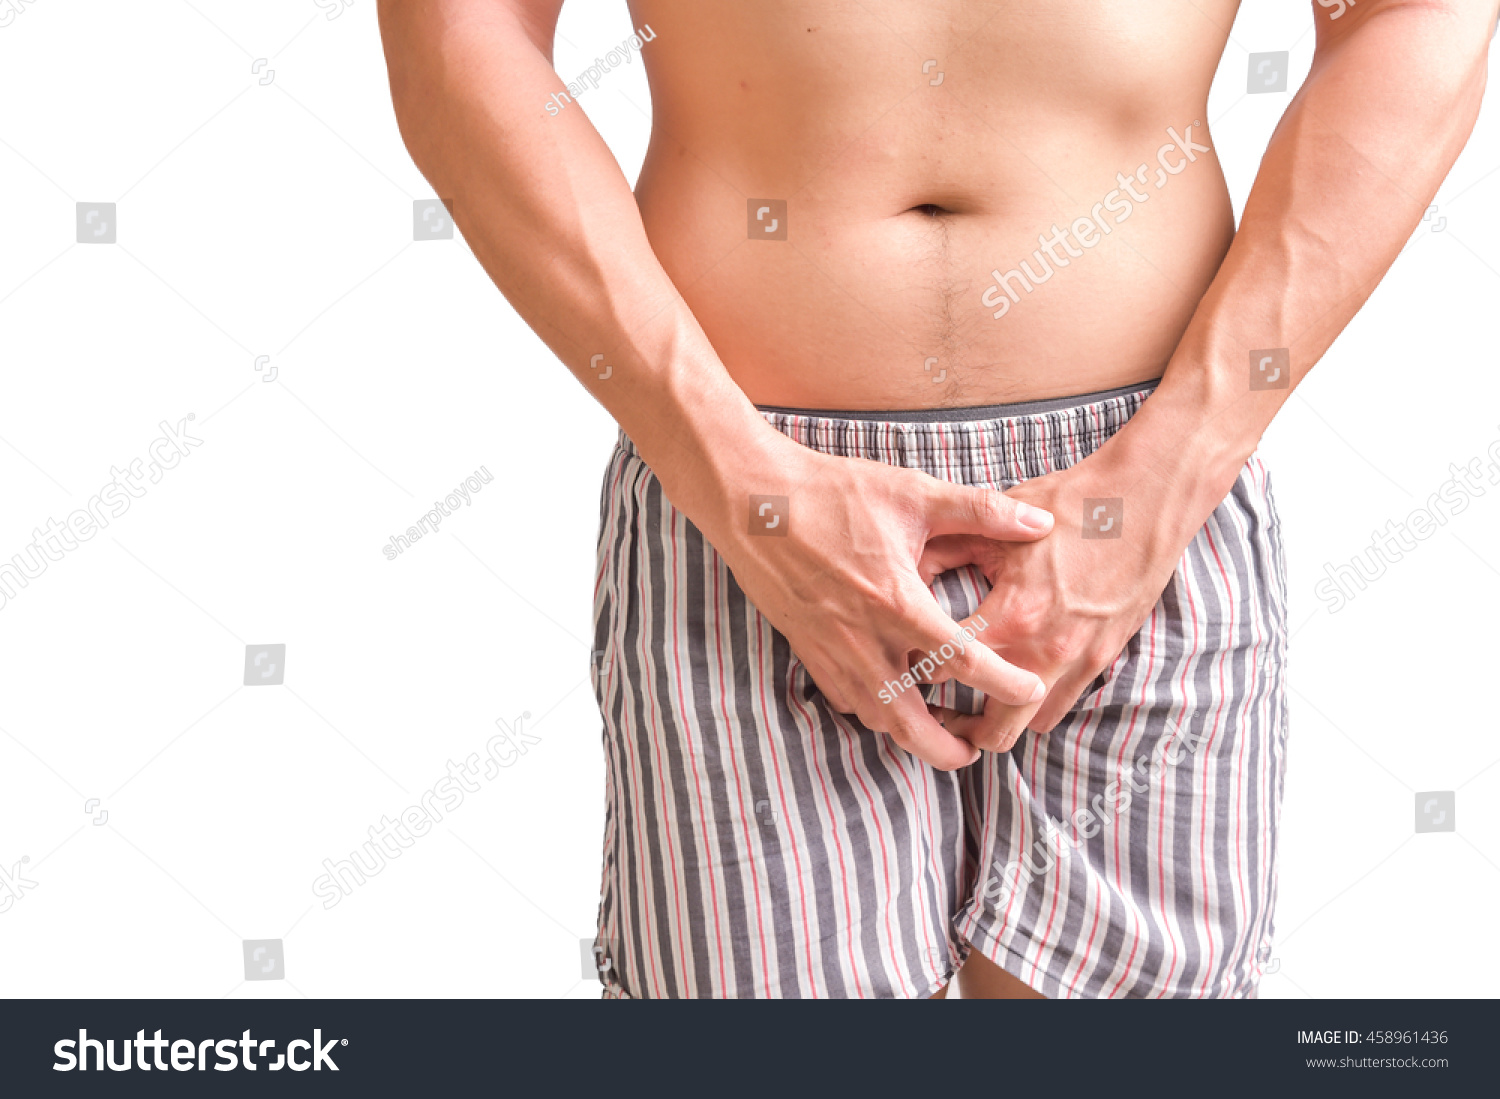 Man Holding Penis 56